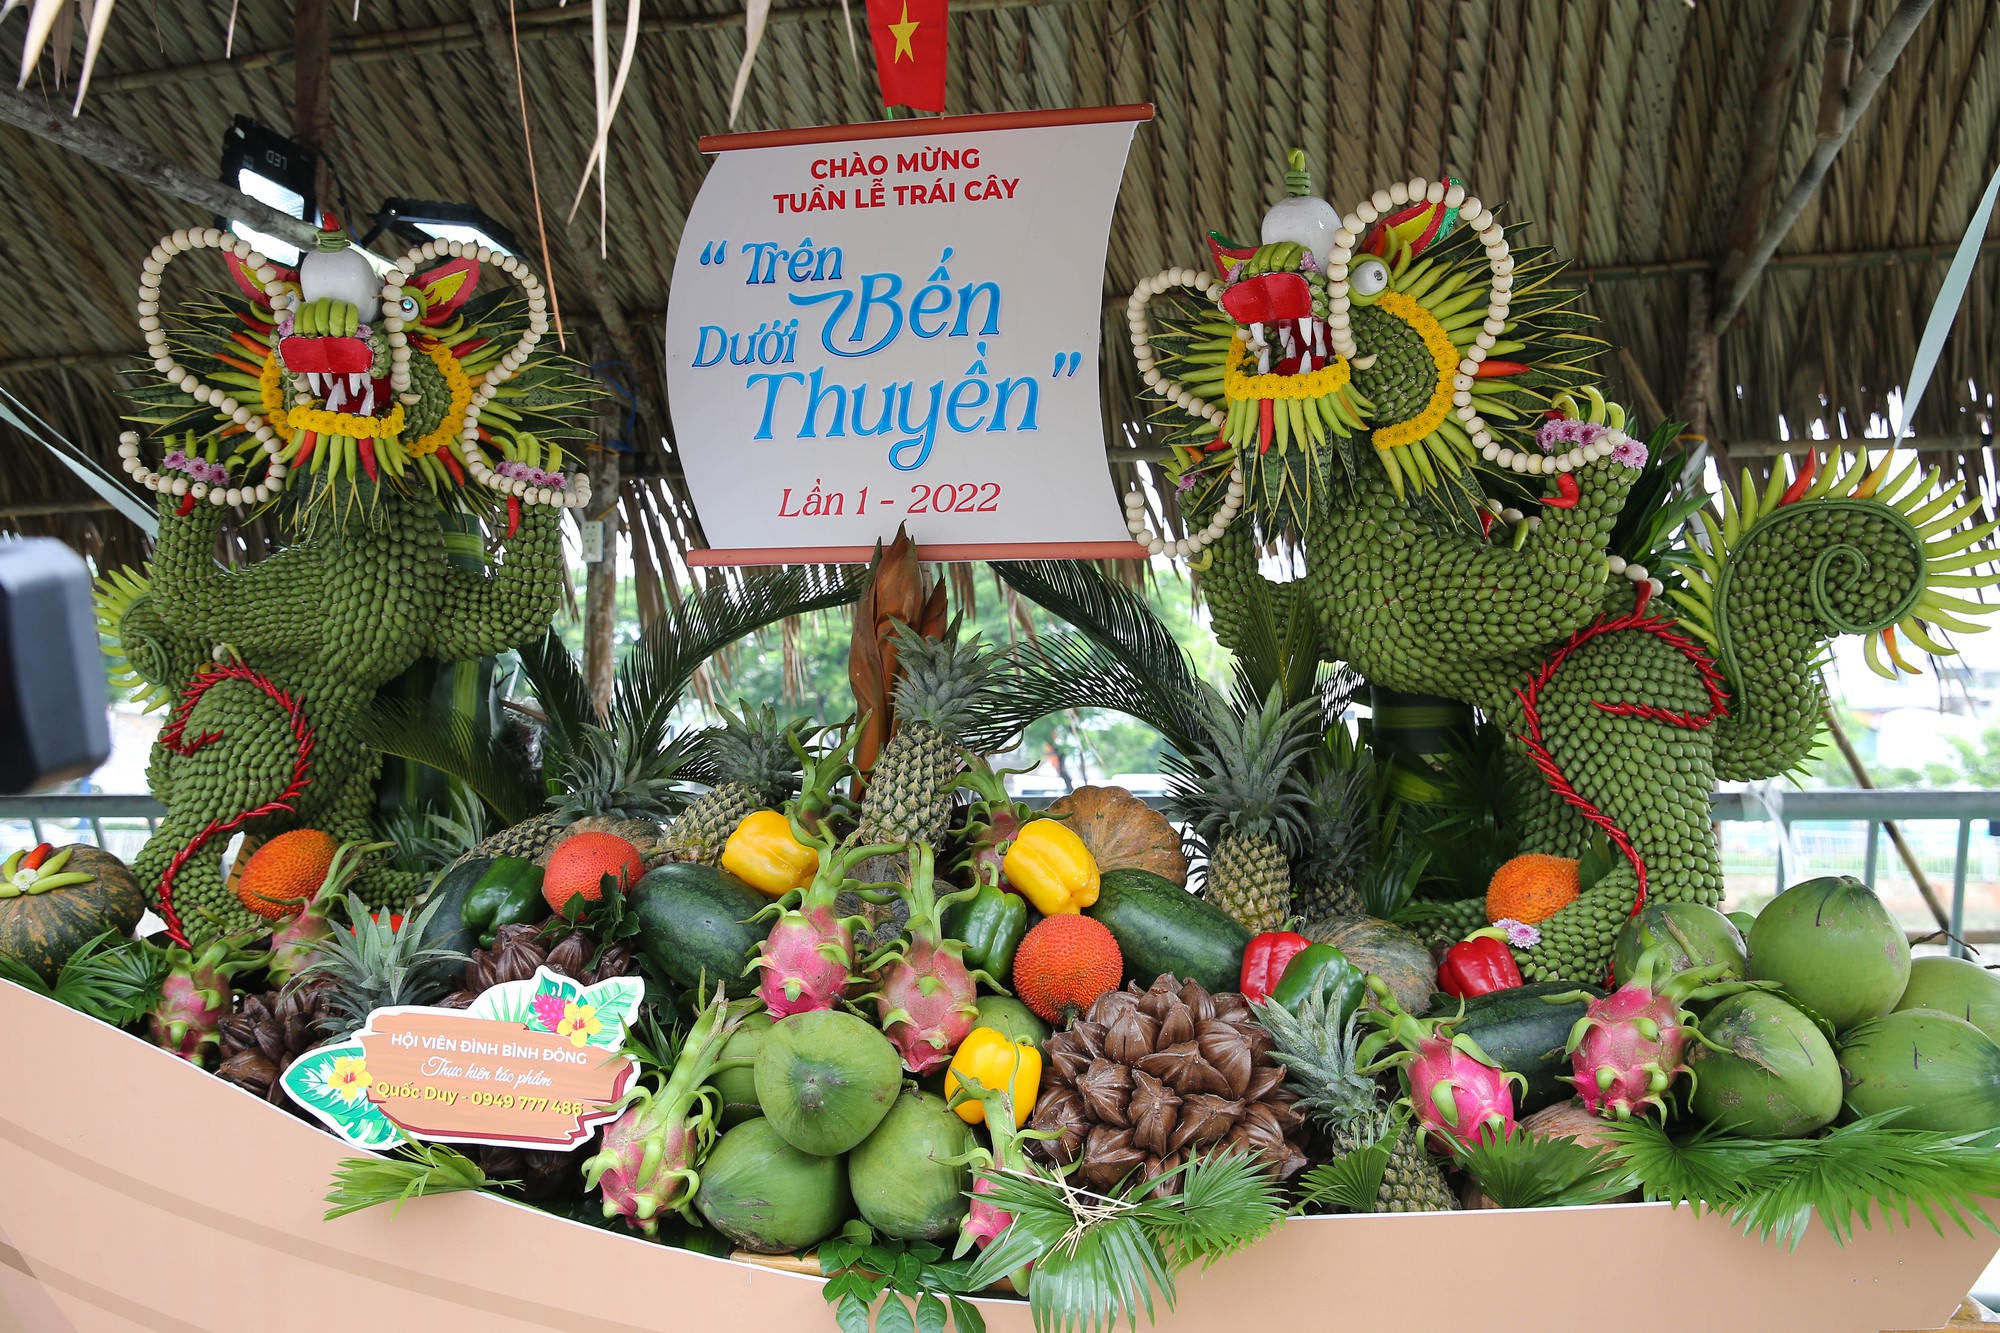 Tuần lễ trái cây của người miền Tây với quy mô đến 180 gian hàng kinh doanh, trình diễn nghệ thuật lần đầu tiên có mặt tại Sài Gòn - Ảnh 4.